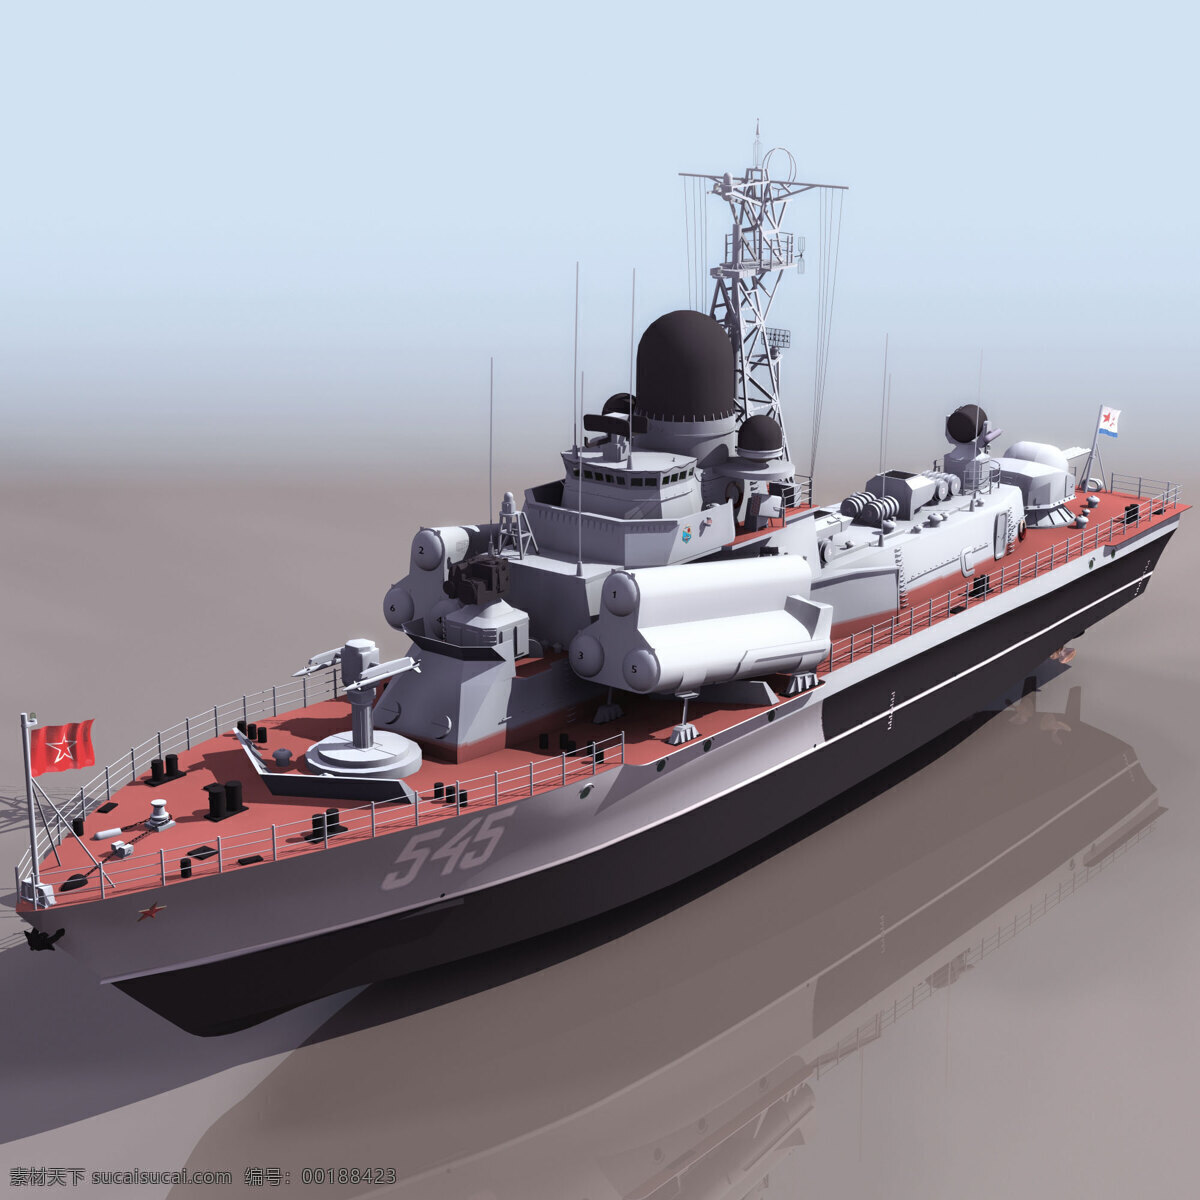 船模型02 nanu 军事模型 船模型 海军武器库 3d模型素材 其他3d模型